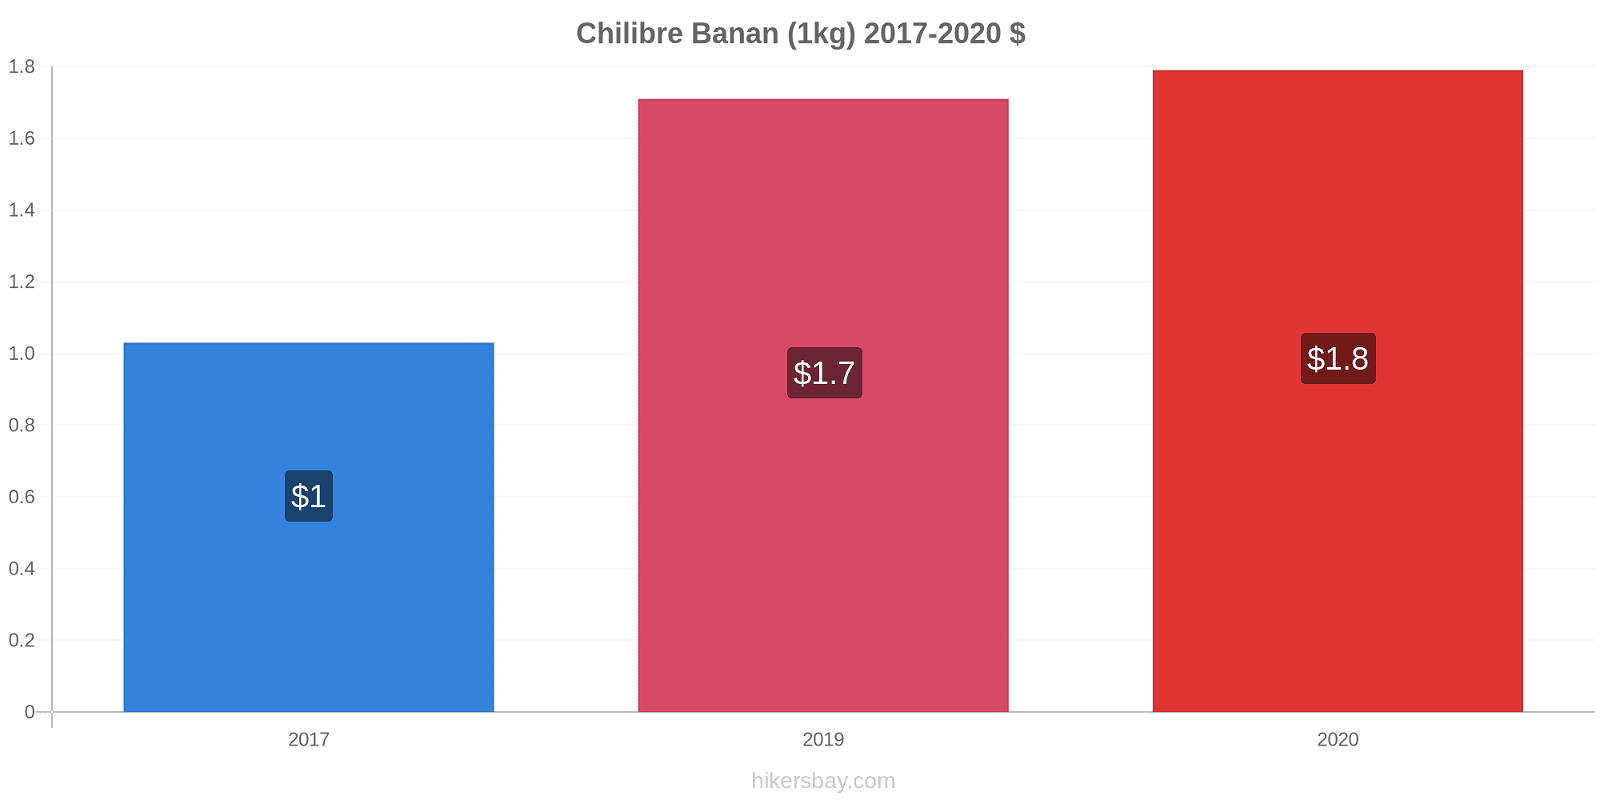 Chilibre prisförändringar Banan (1kg) hikersbay.com